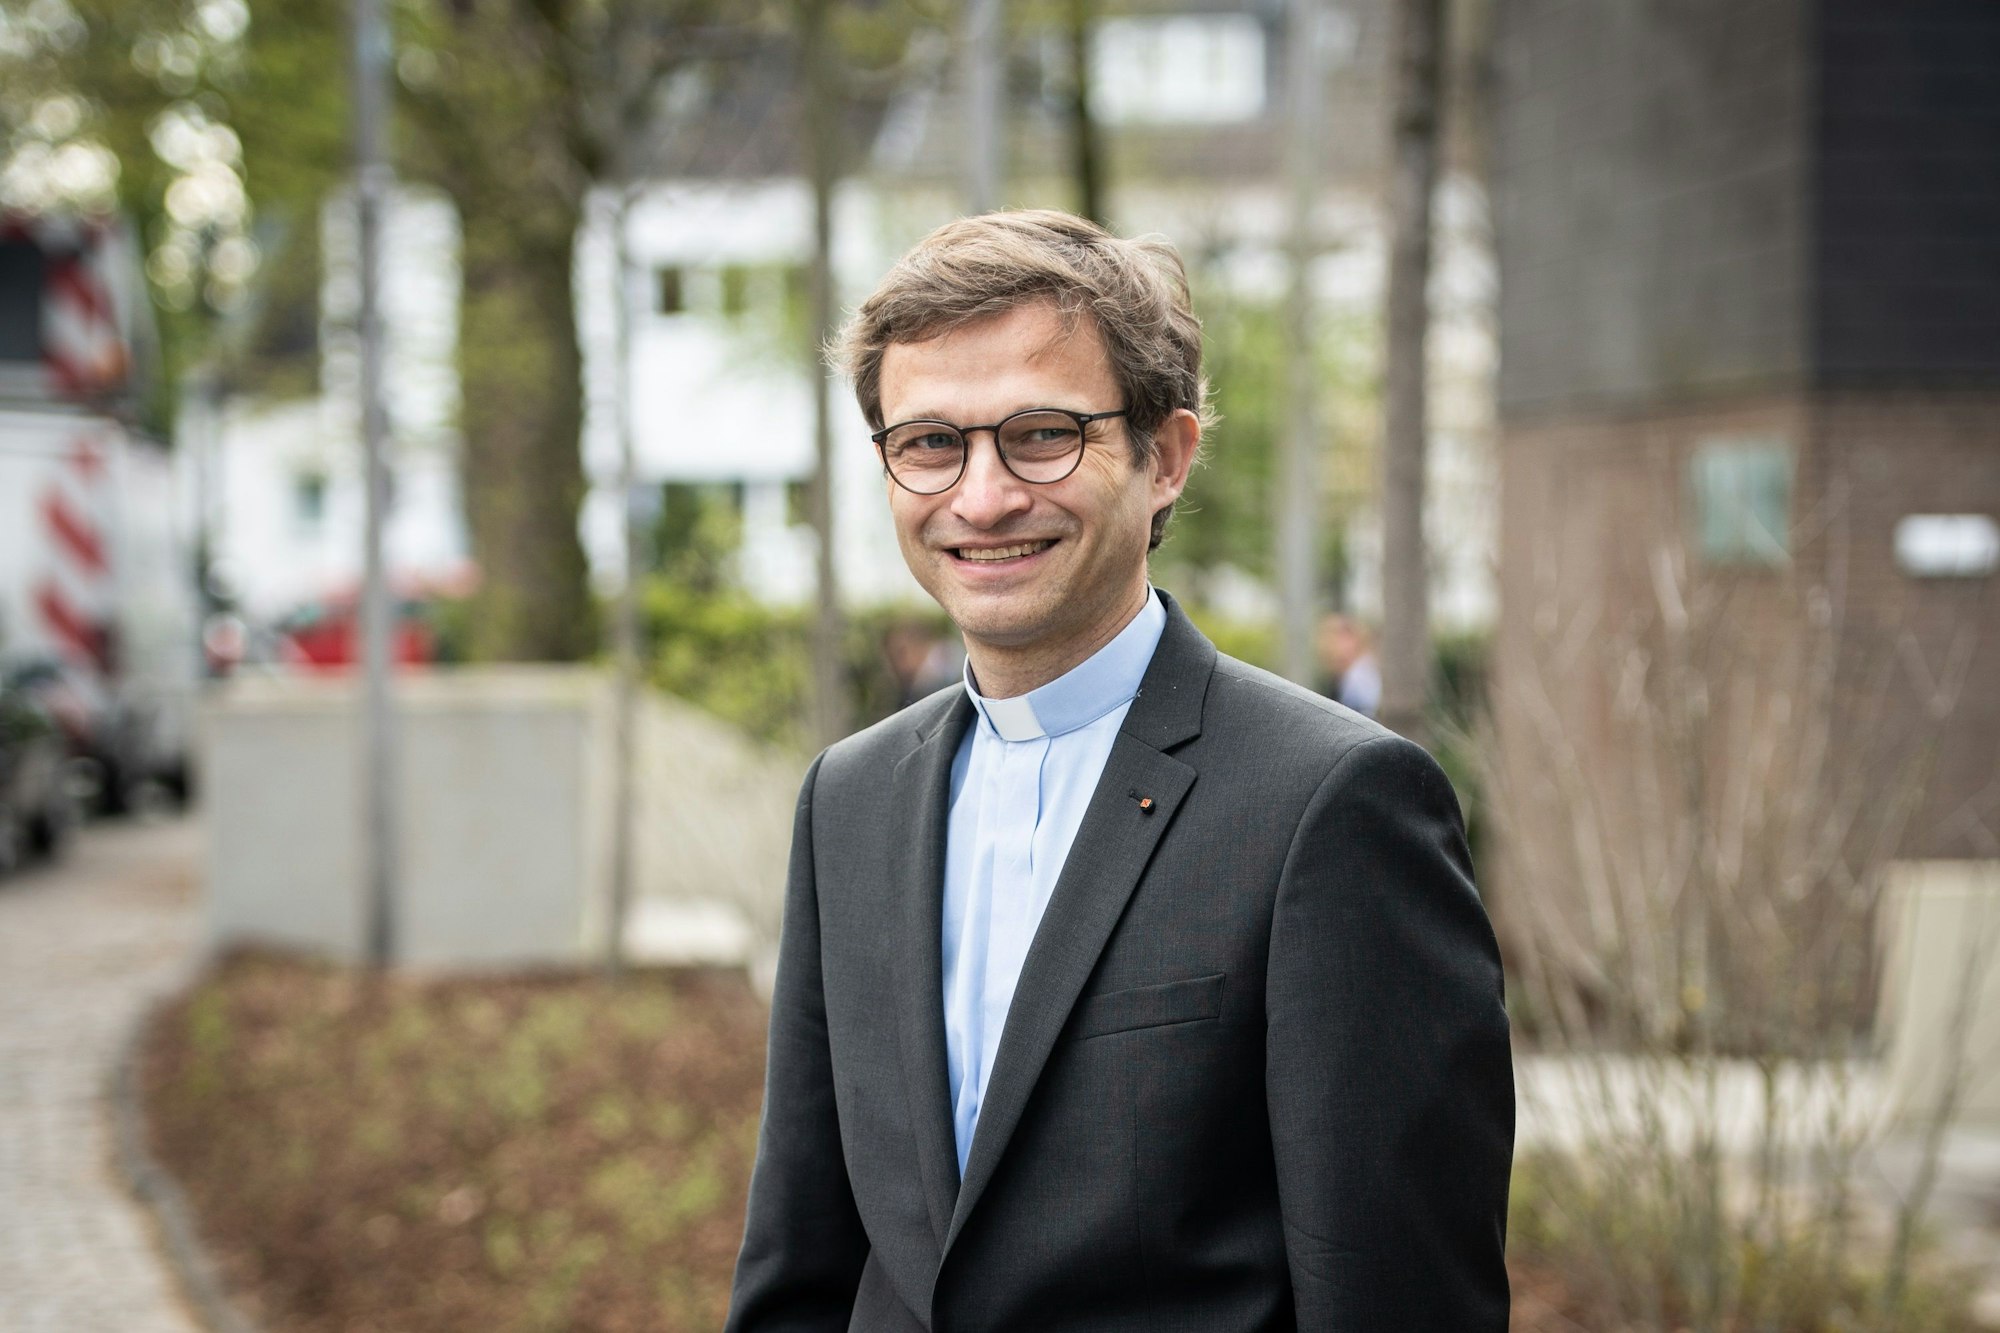 Prof. Elmar Nass lehrt Sozialthetik an der Kölner Hochschule für Katholische Theologie und hat die CDU beraten.

